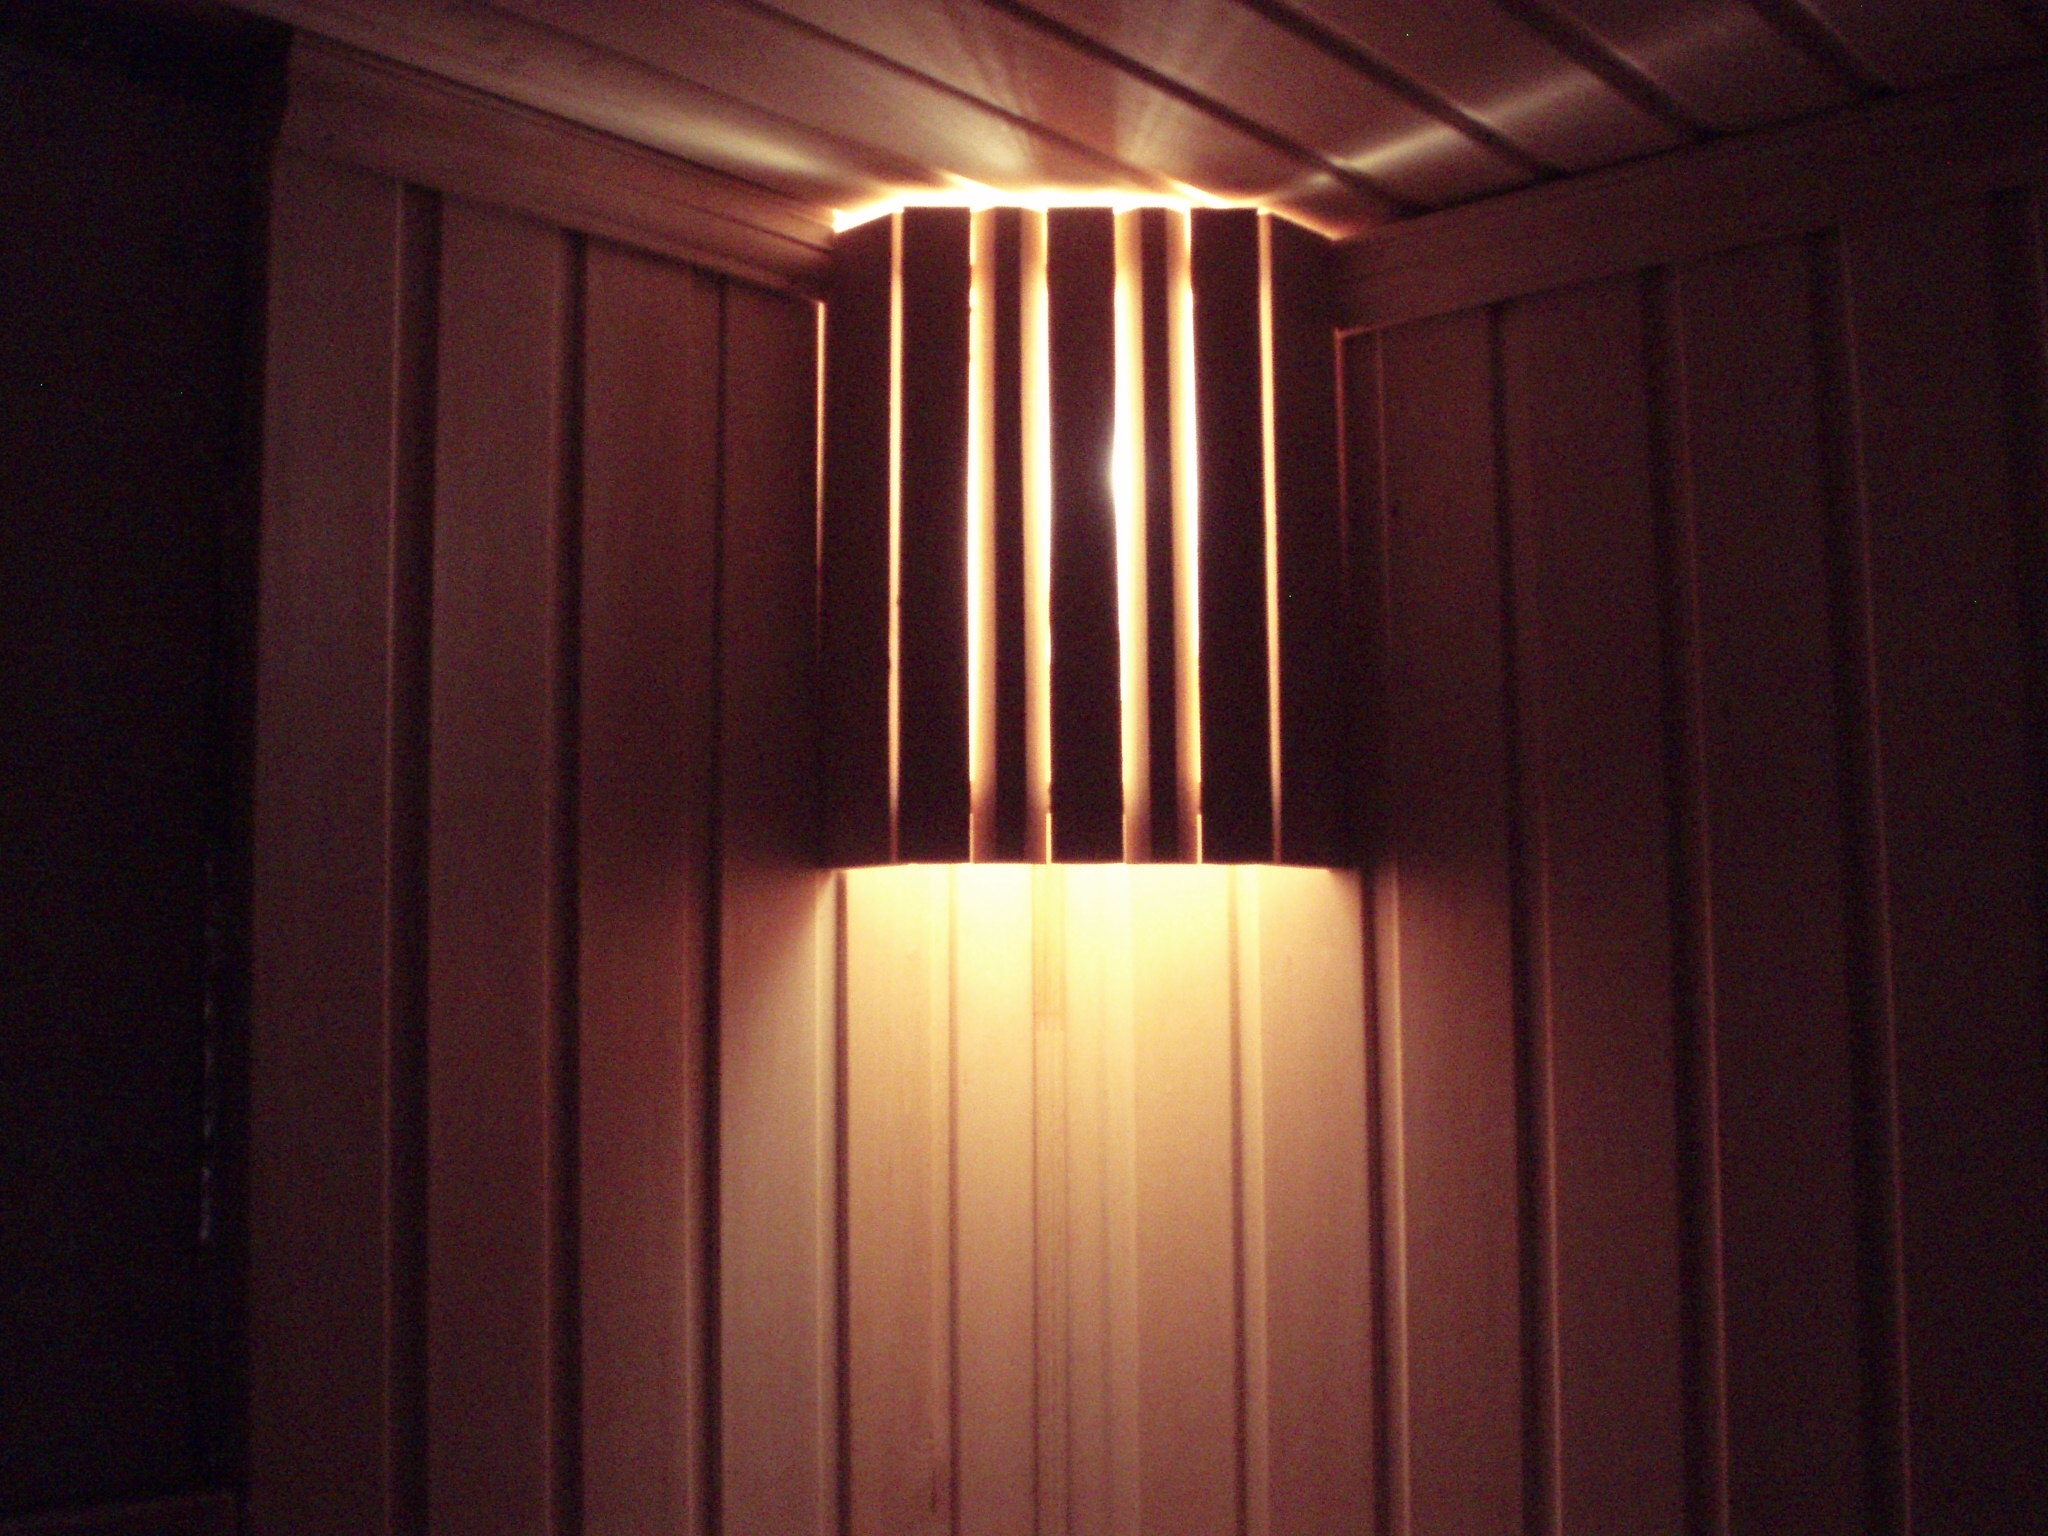 Светильники для бани: обзор источников света для разных помещений бани, какие можно использовать, а какие нельзя